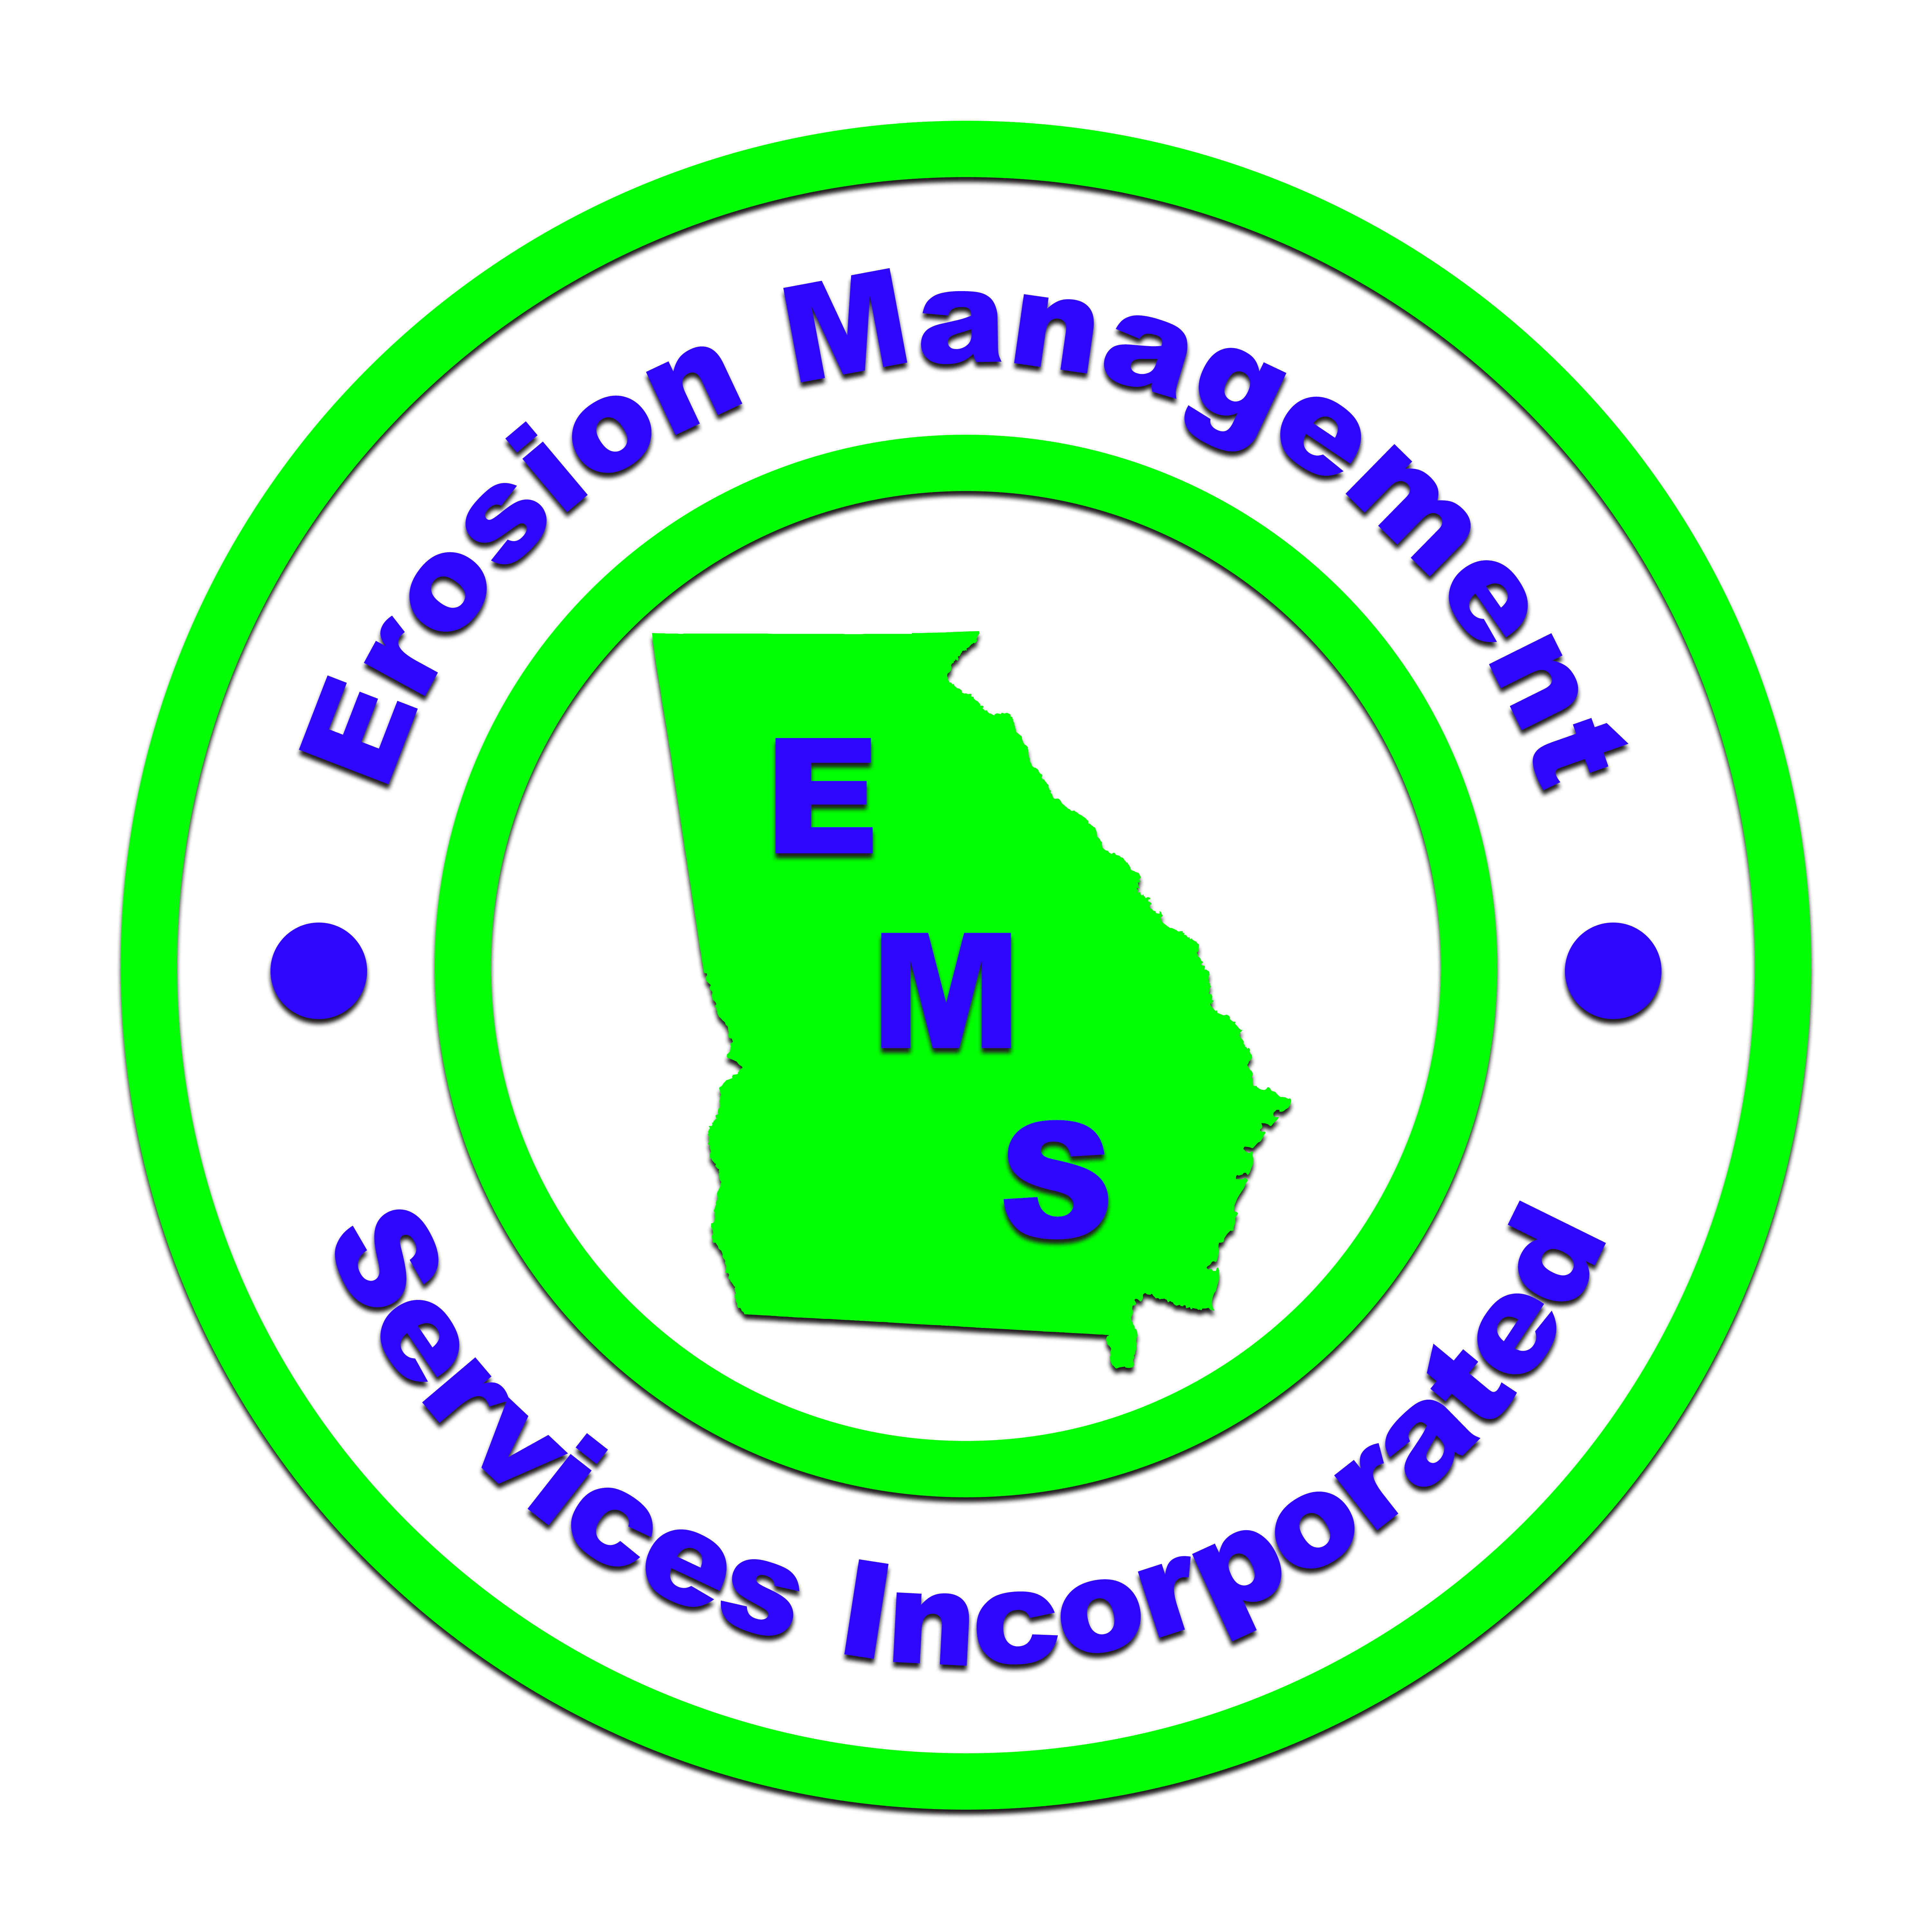 Erosion Management Services